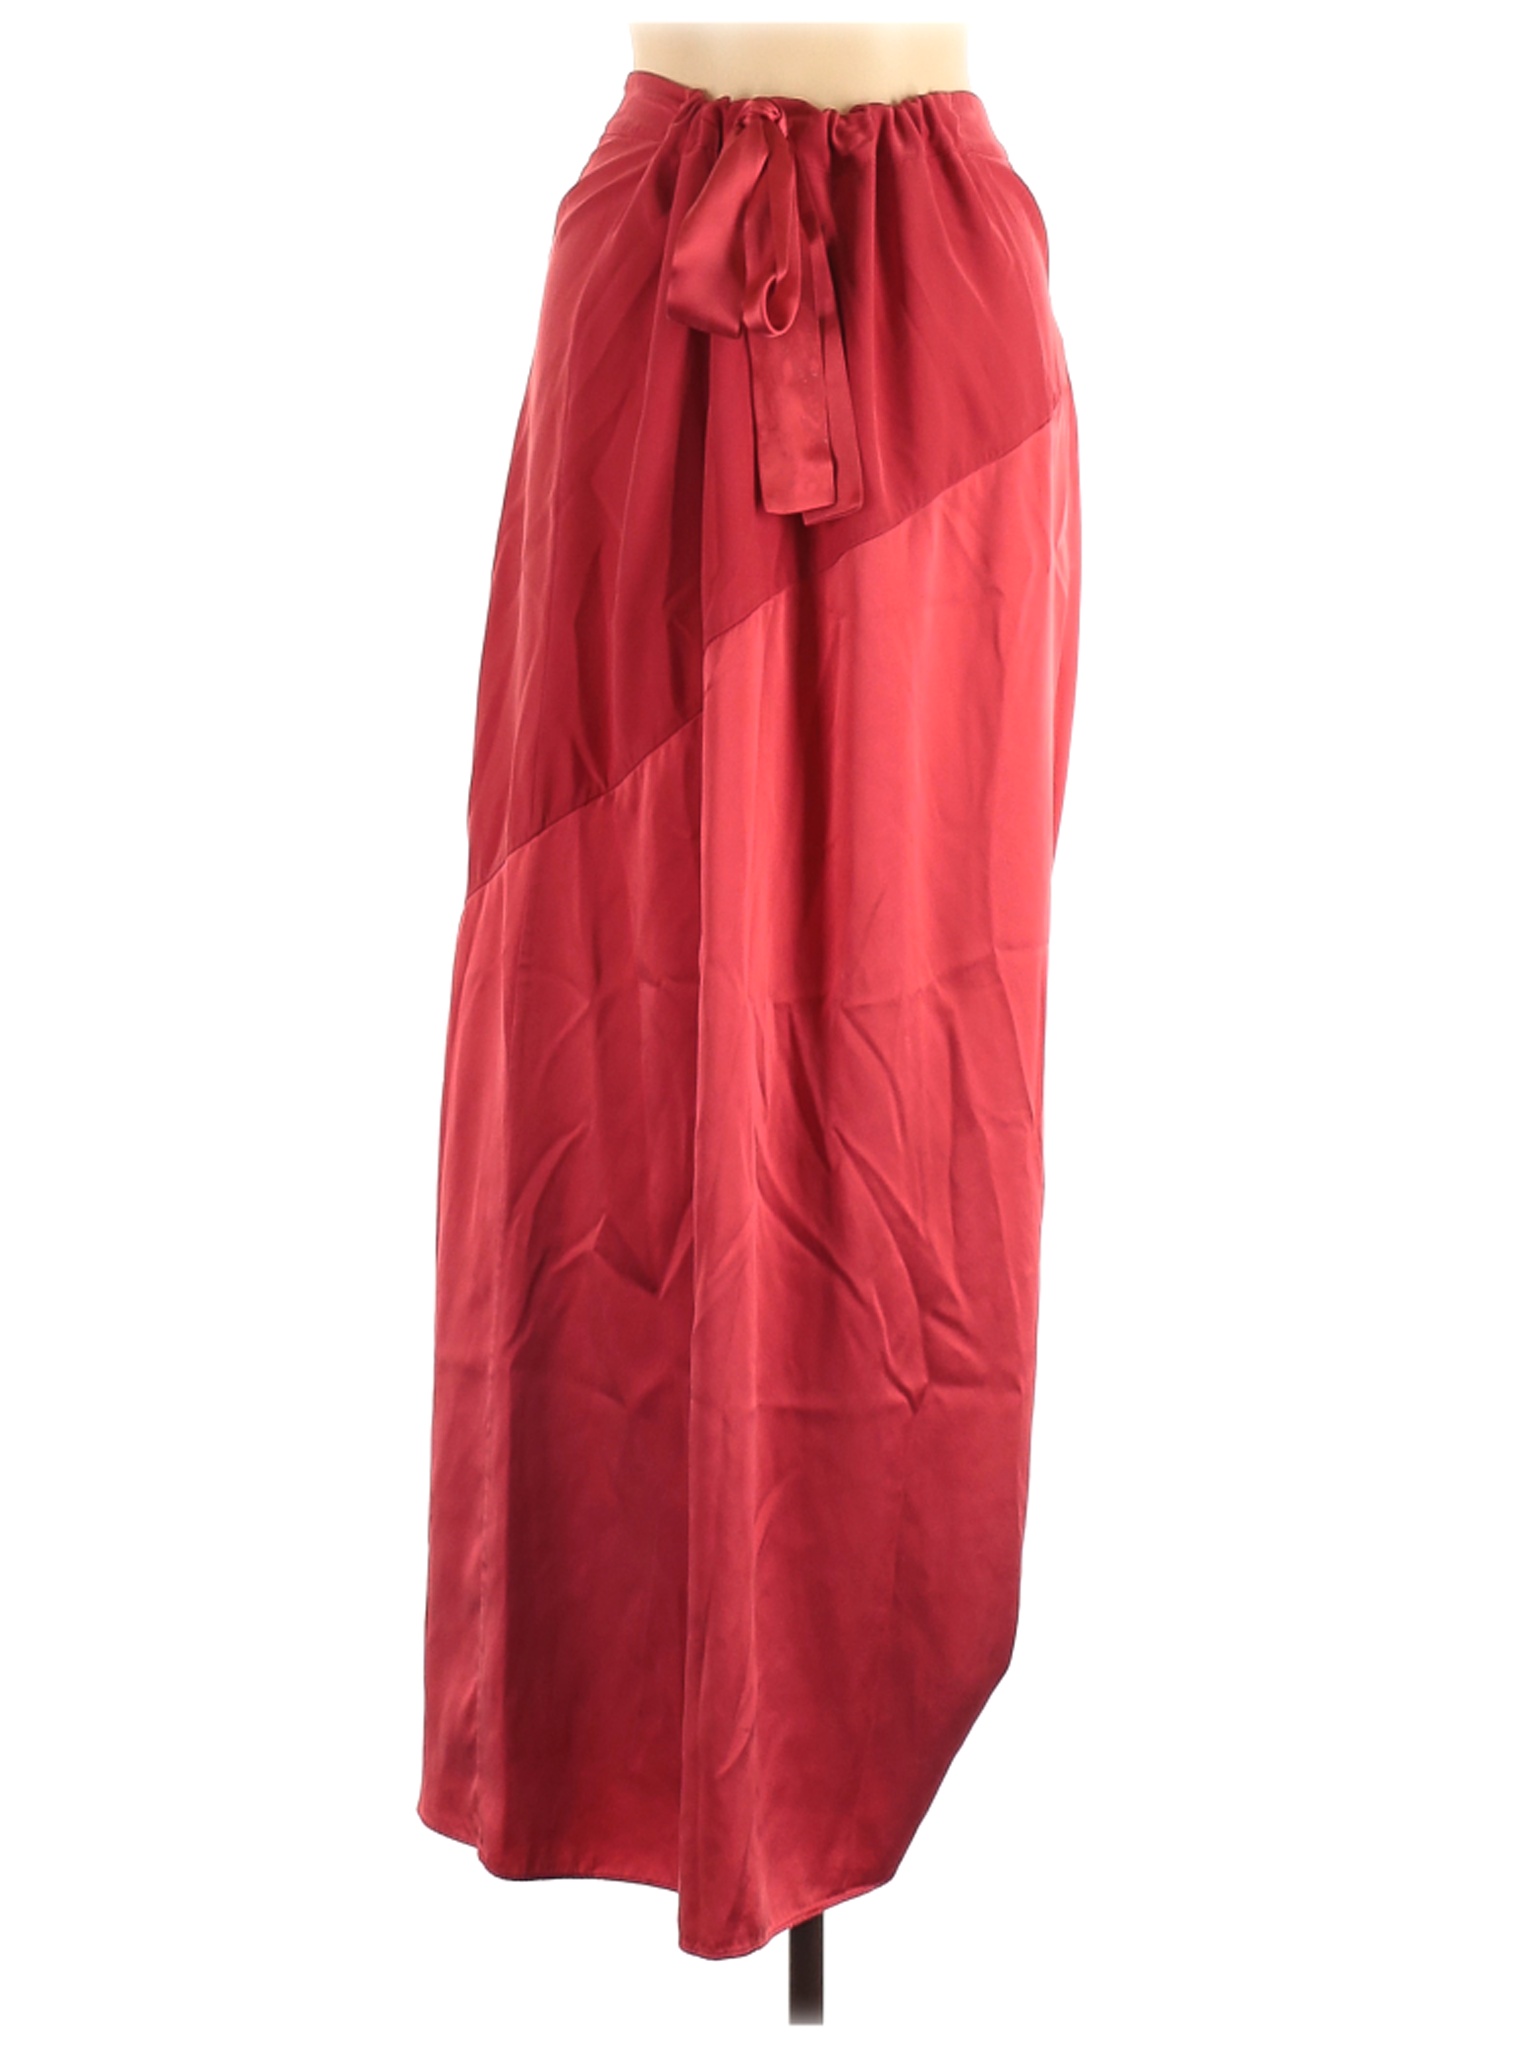 Calypso St. Barth Women Red Silk Skirt M | eBay